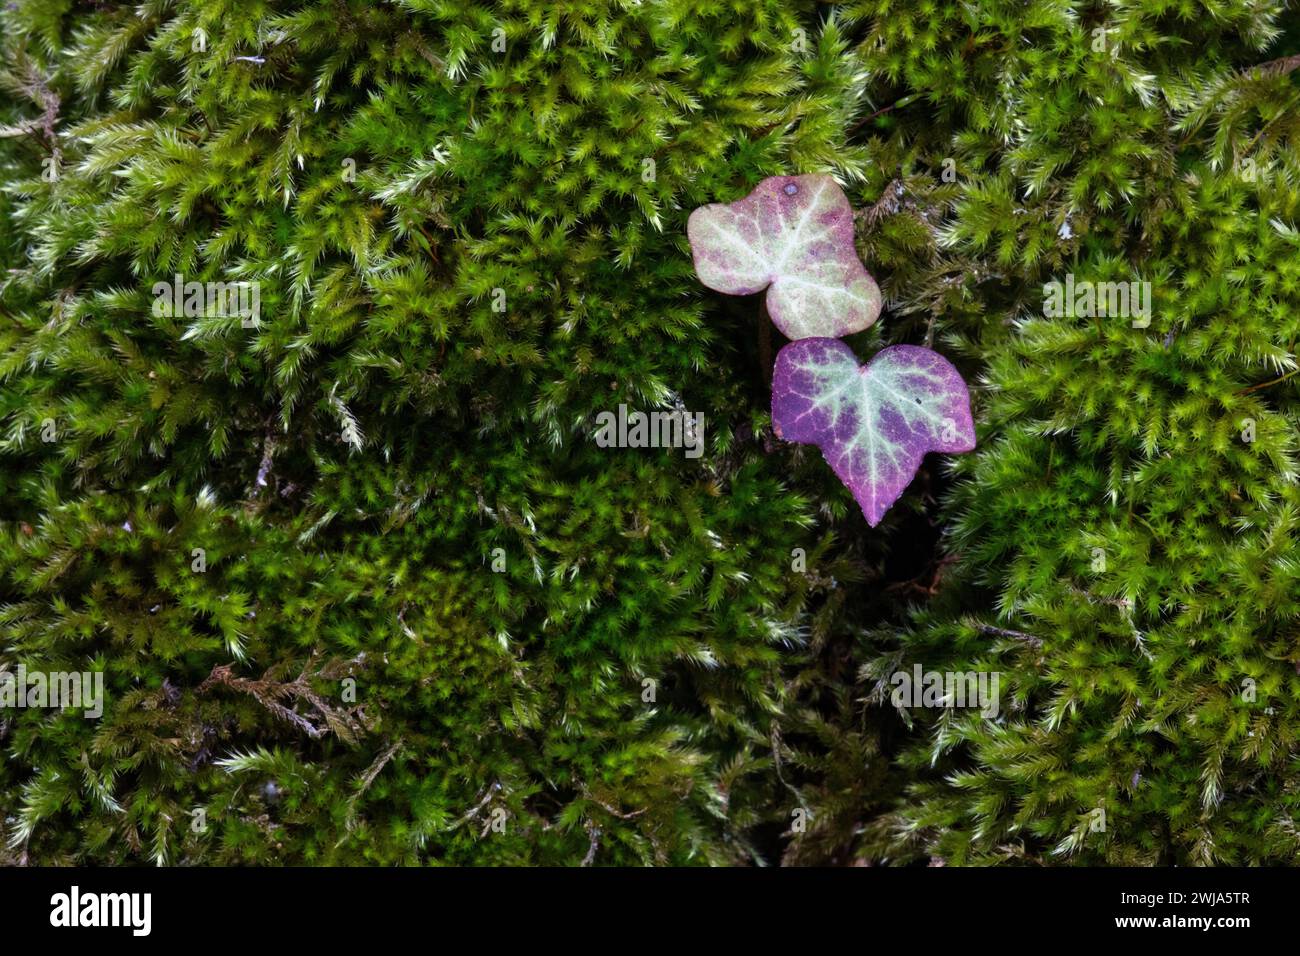 Une fleur sauvage violette singulière émerge d'un tapis luxuriant de mousse verte, mettant en valeur la beauté naturelle trouvée dans les paysages de la Mancha, Castilla la Banque D'Images